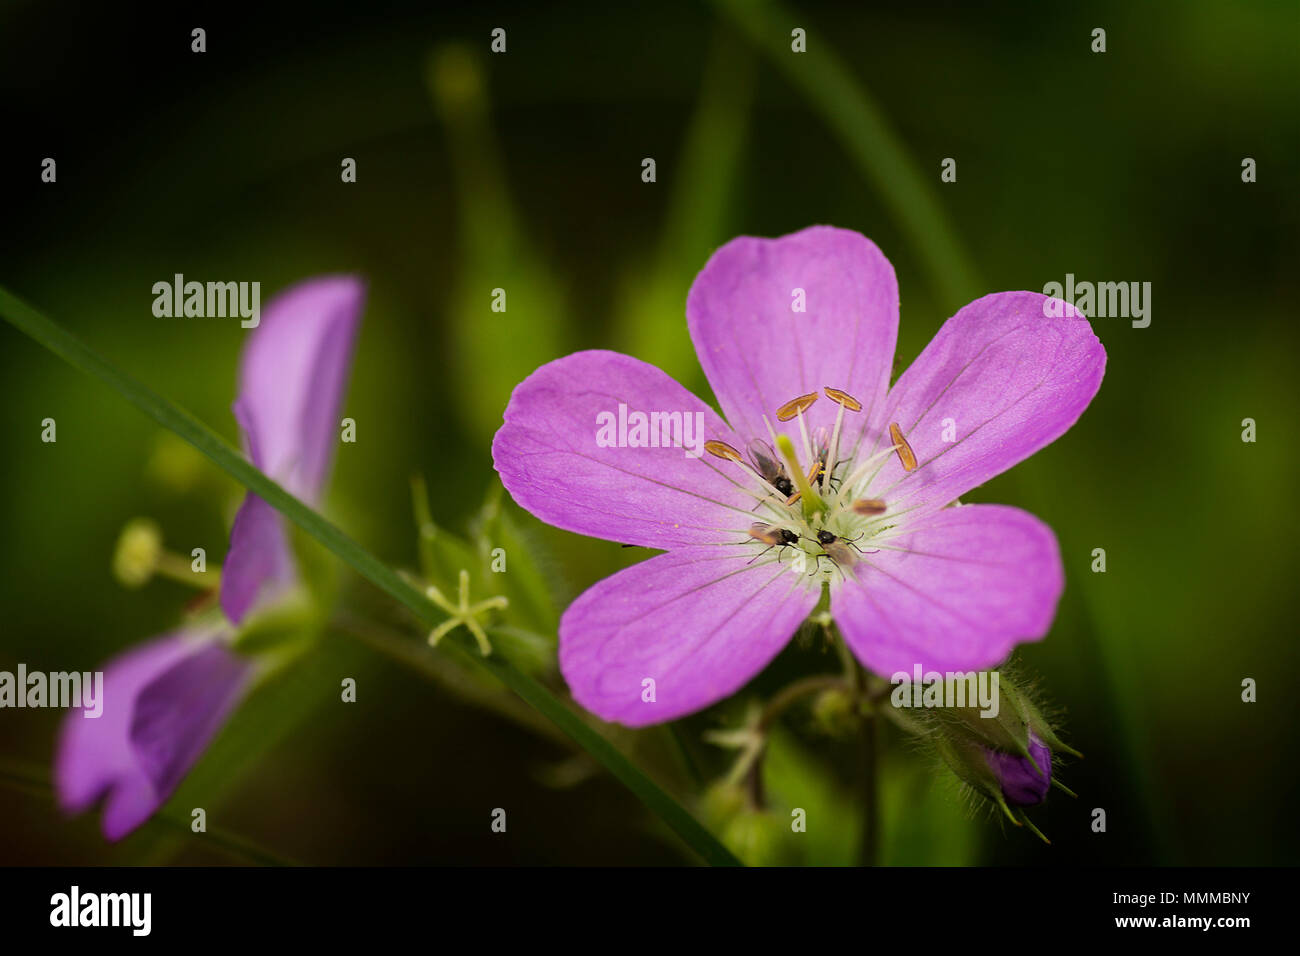 Nahaufnahme eines wilden Geranien oder Geranium maculatum Wildflower mit kleinen Insekten. Stockfoto